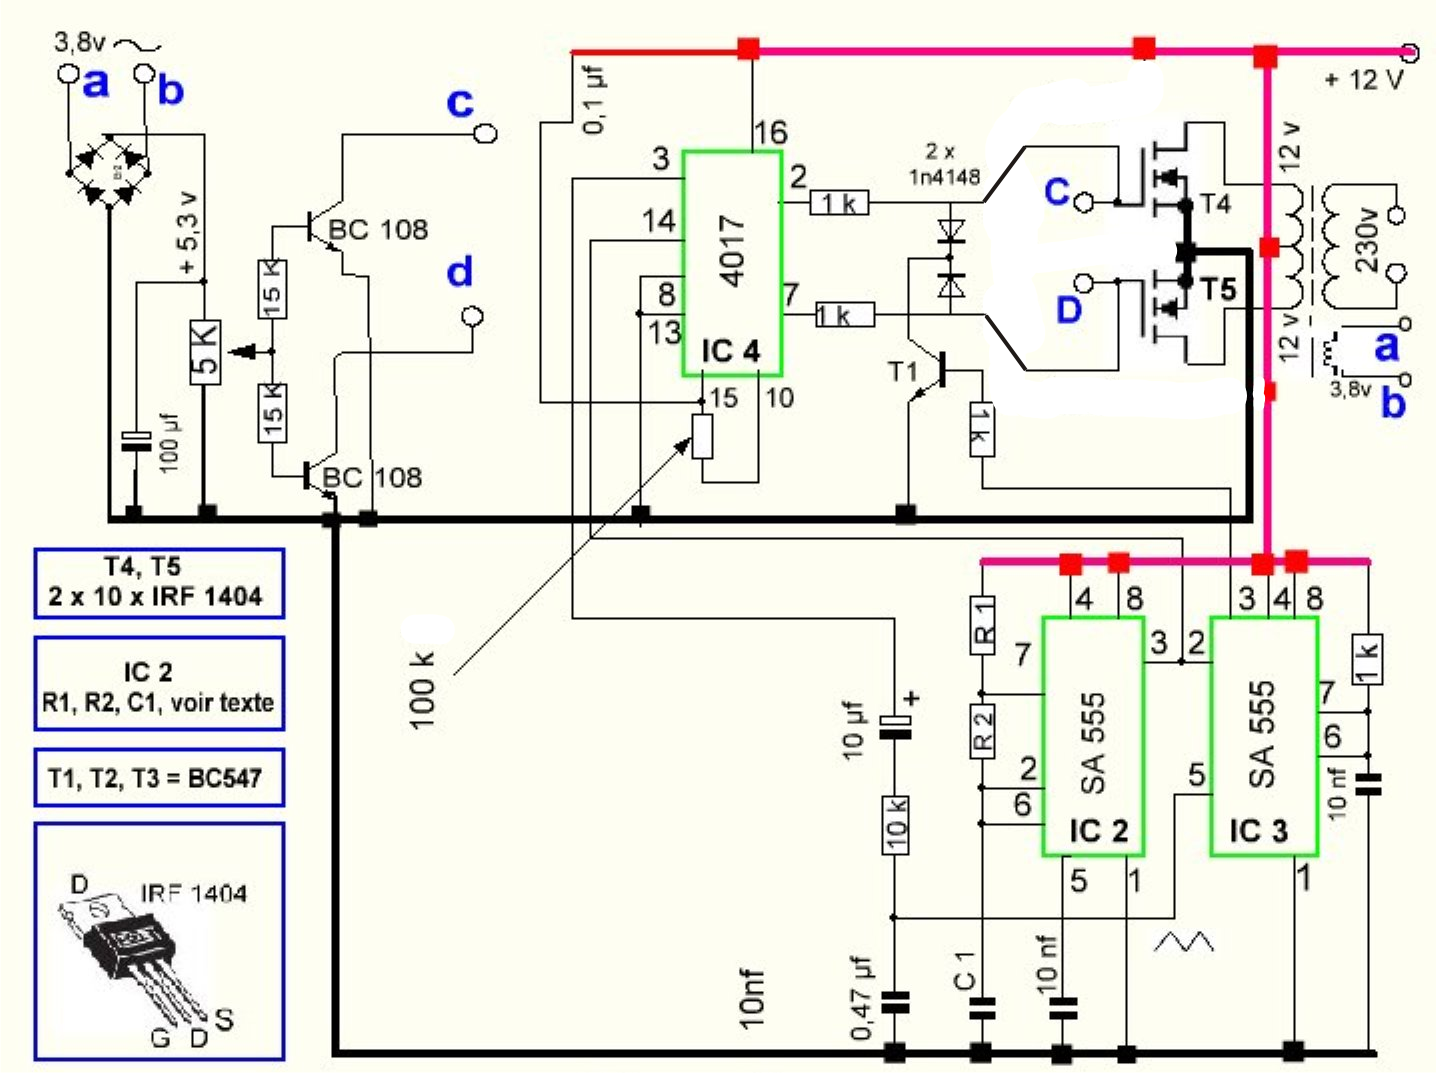 Secret Diagram: More Circuit diagram for inverter